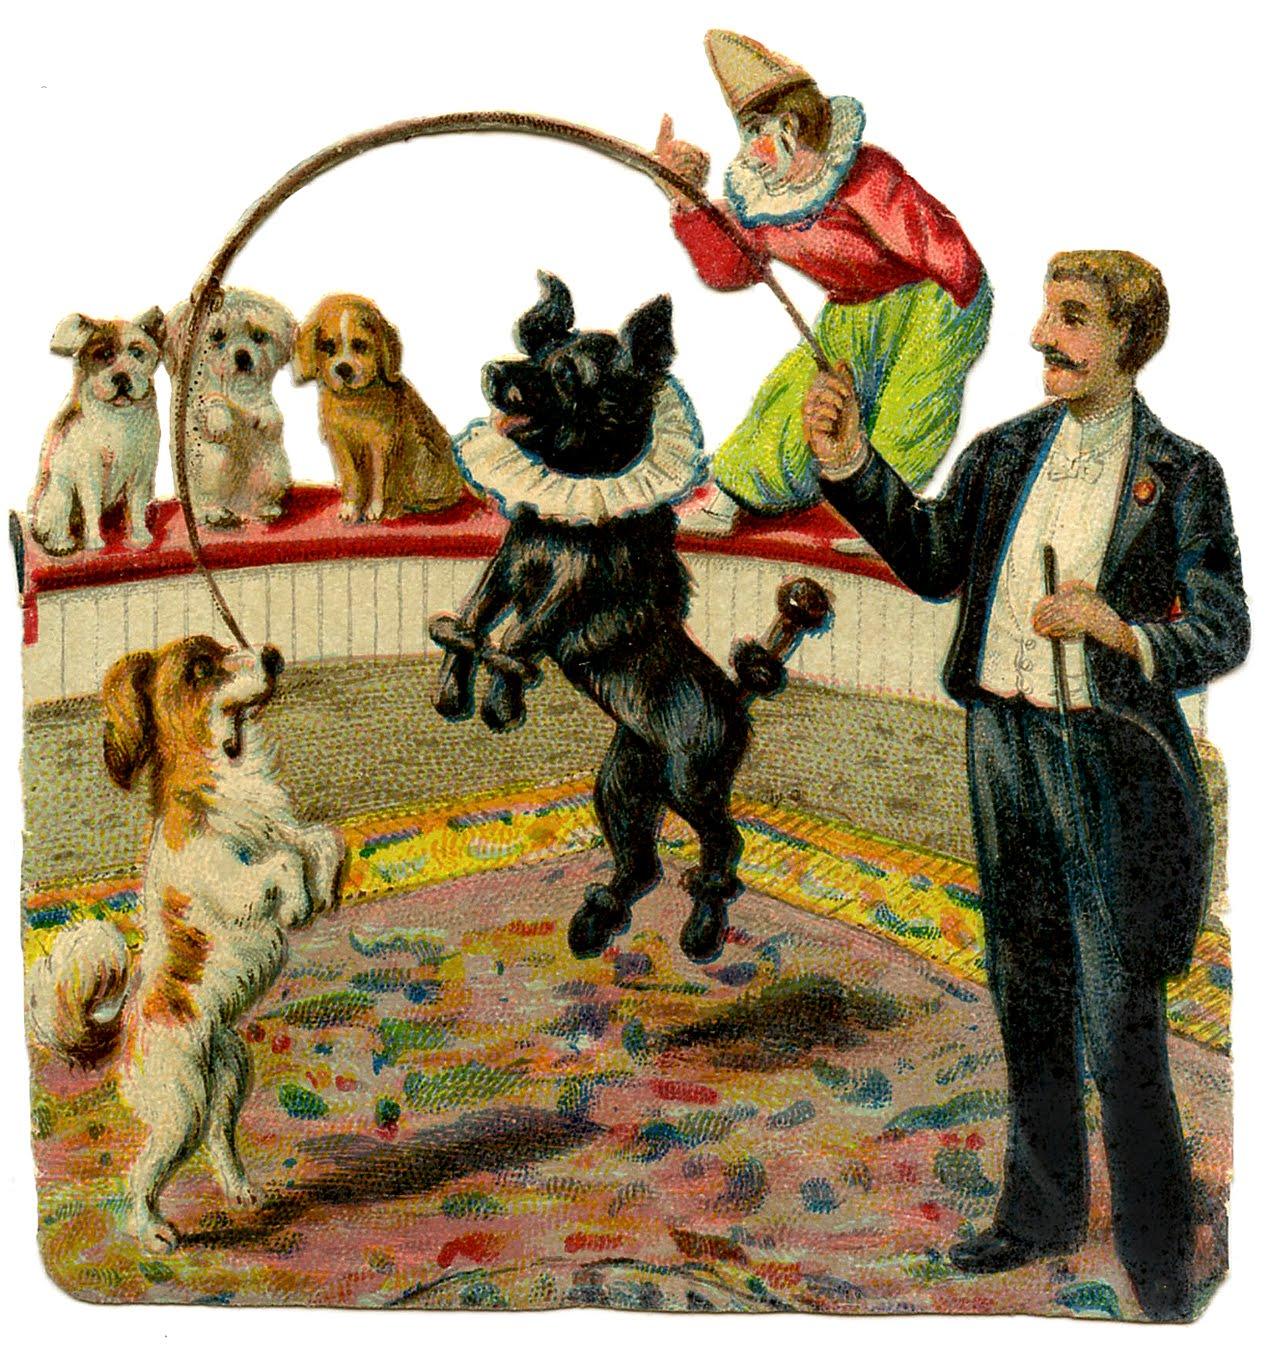 Les chiens du cirque en quelques images !